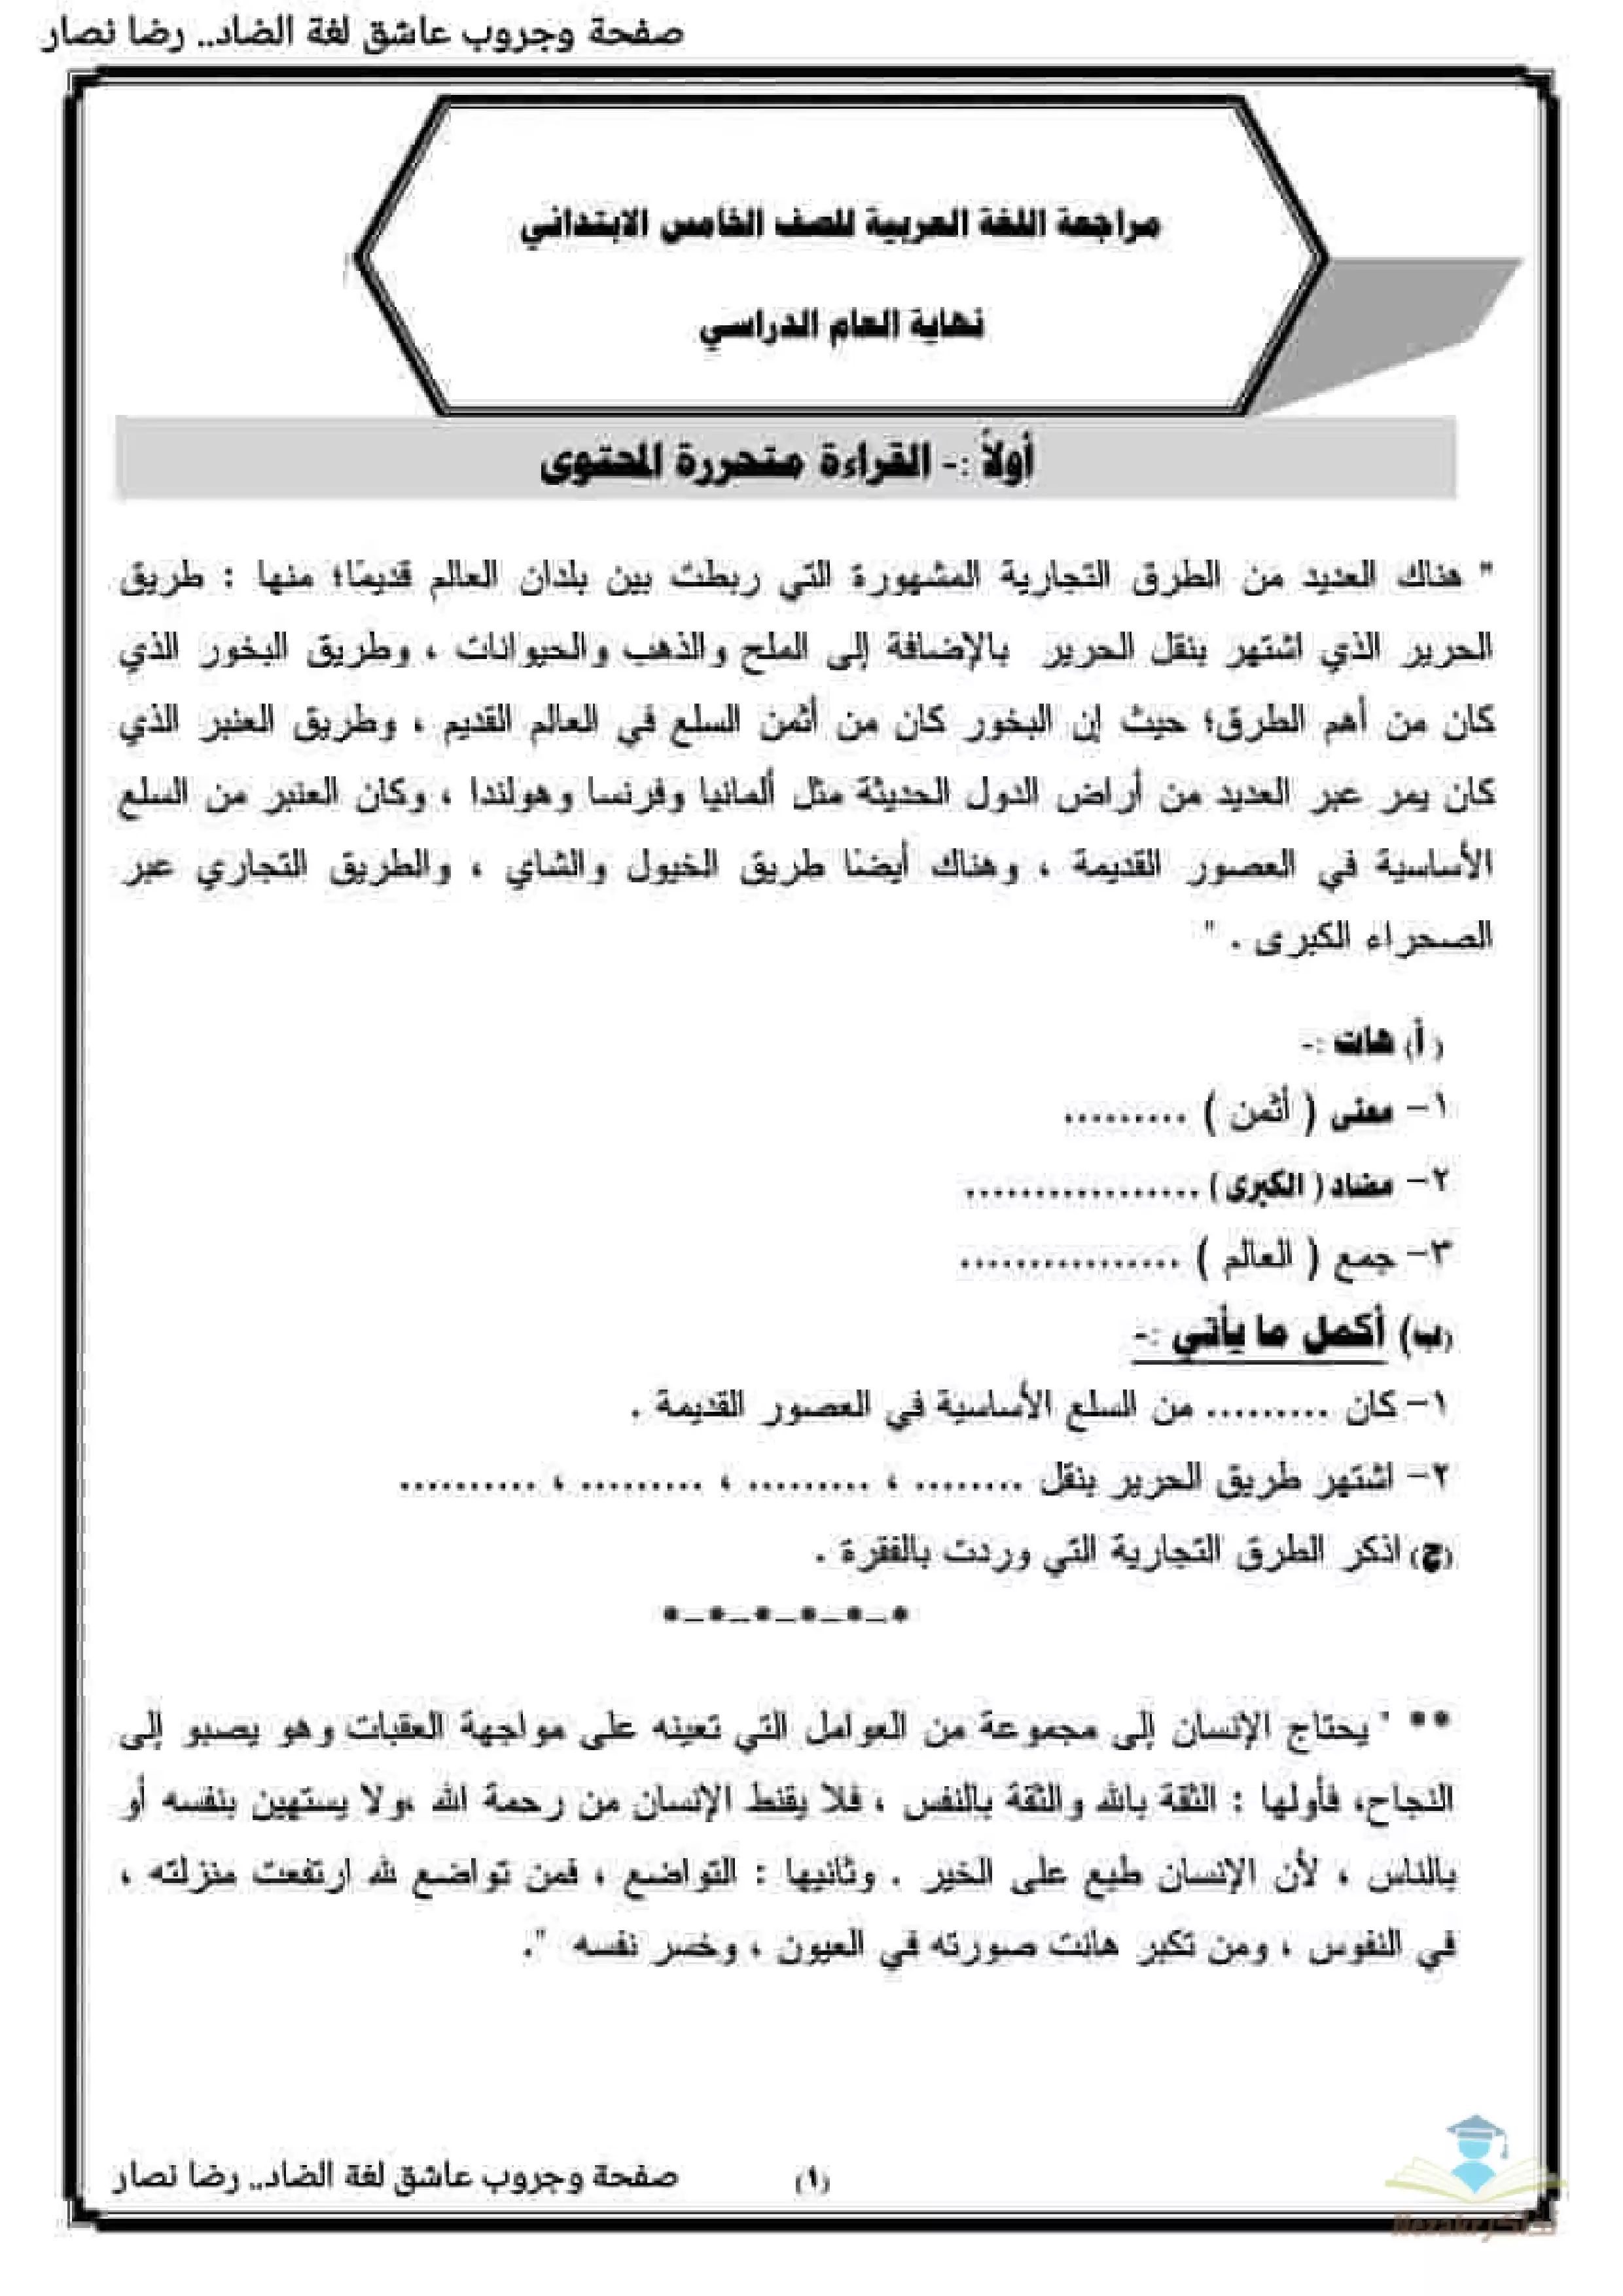 مذكرة مراجعة نهائية لغة عربية للصف الخامس الابتدائي الترم الثاني